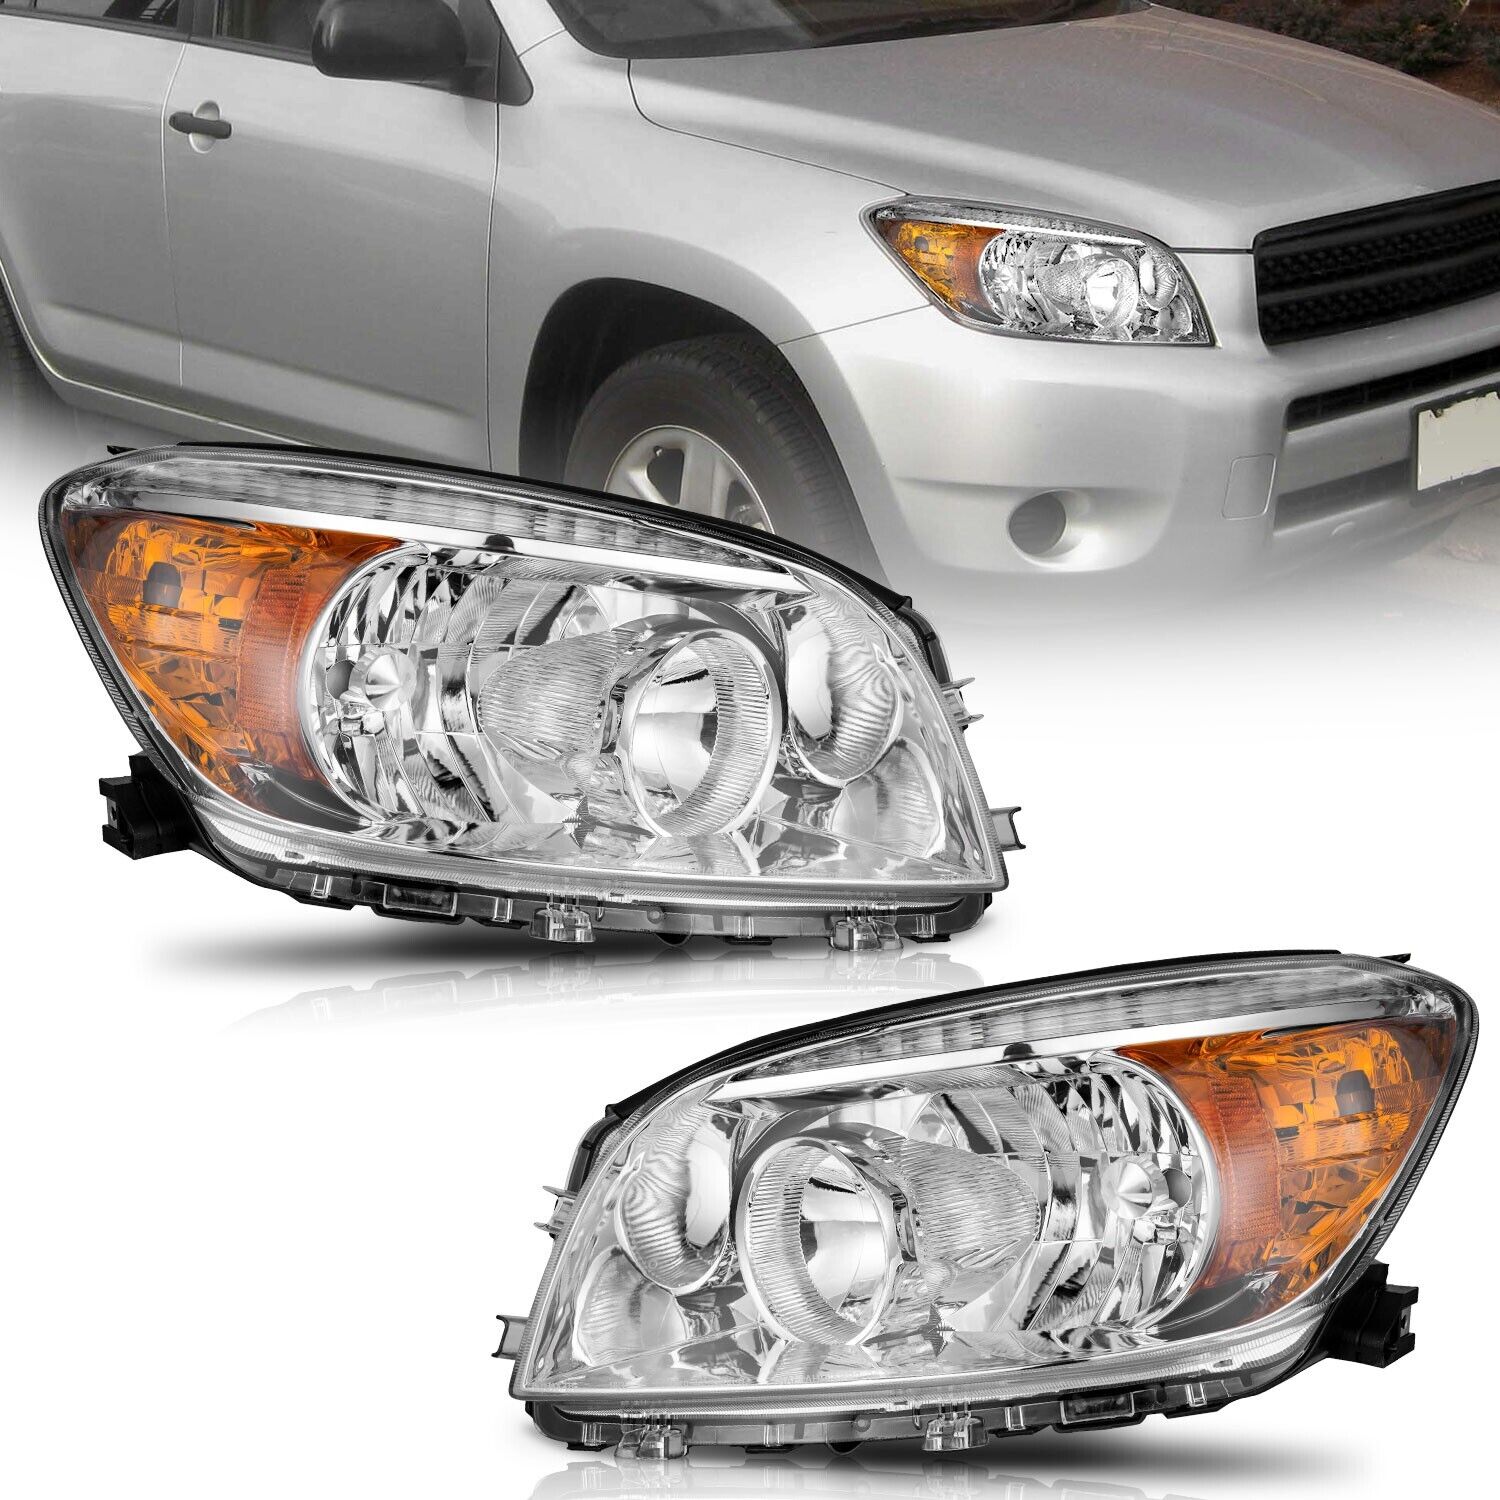 WEELMOTO Headlights For 2006-2008 Toyota RAV4 Chrome Housing Headlamp Left+Right